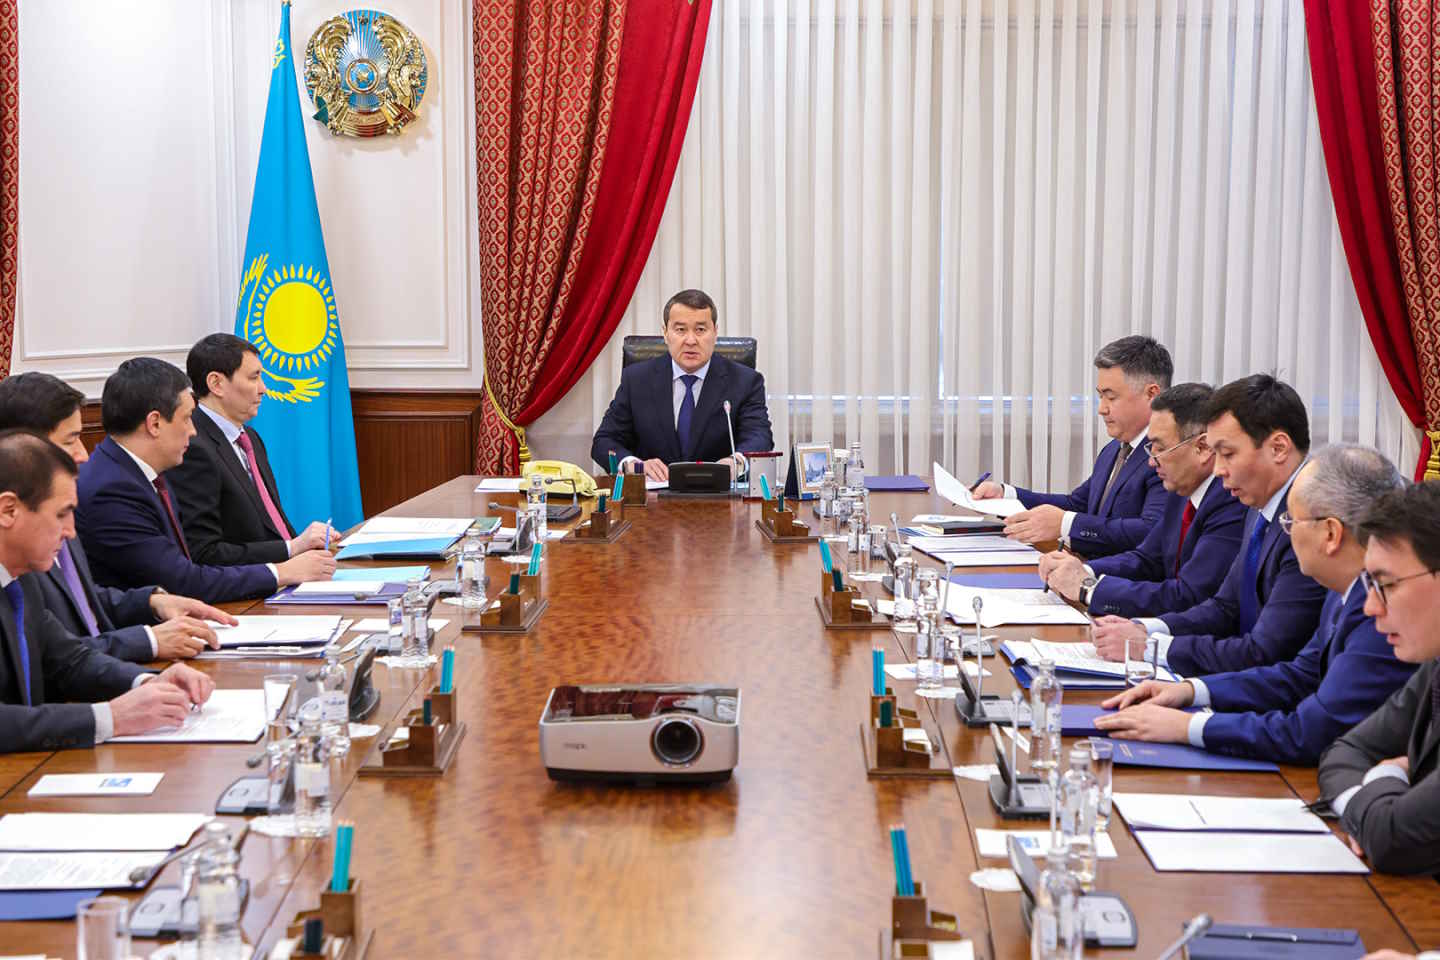 Новости Казахстана / Экономика в Казахстане / В Казахстан возвращены более 1 трлн тенге незаконно приобретенных активов